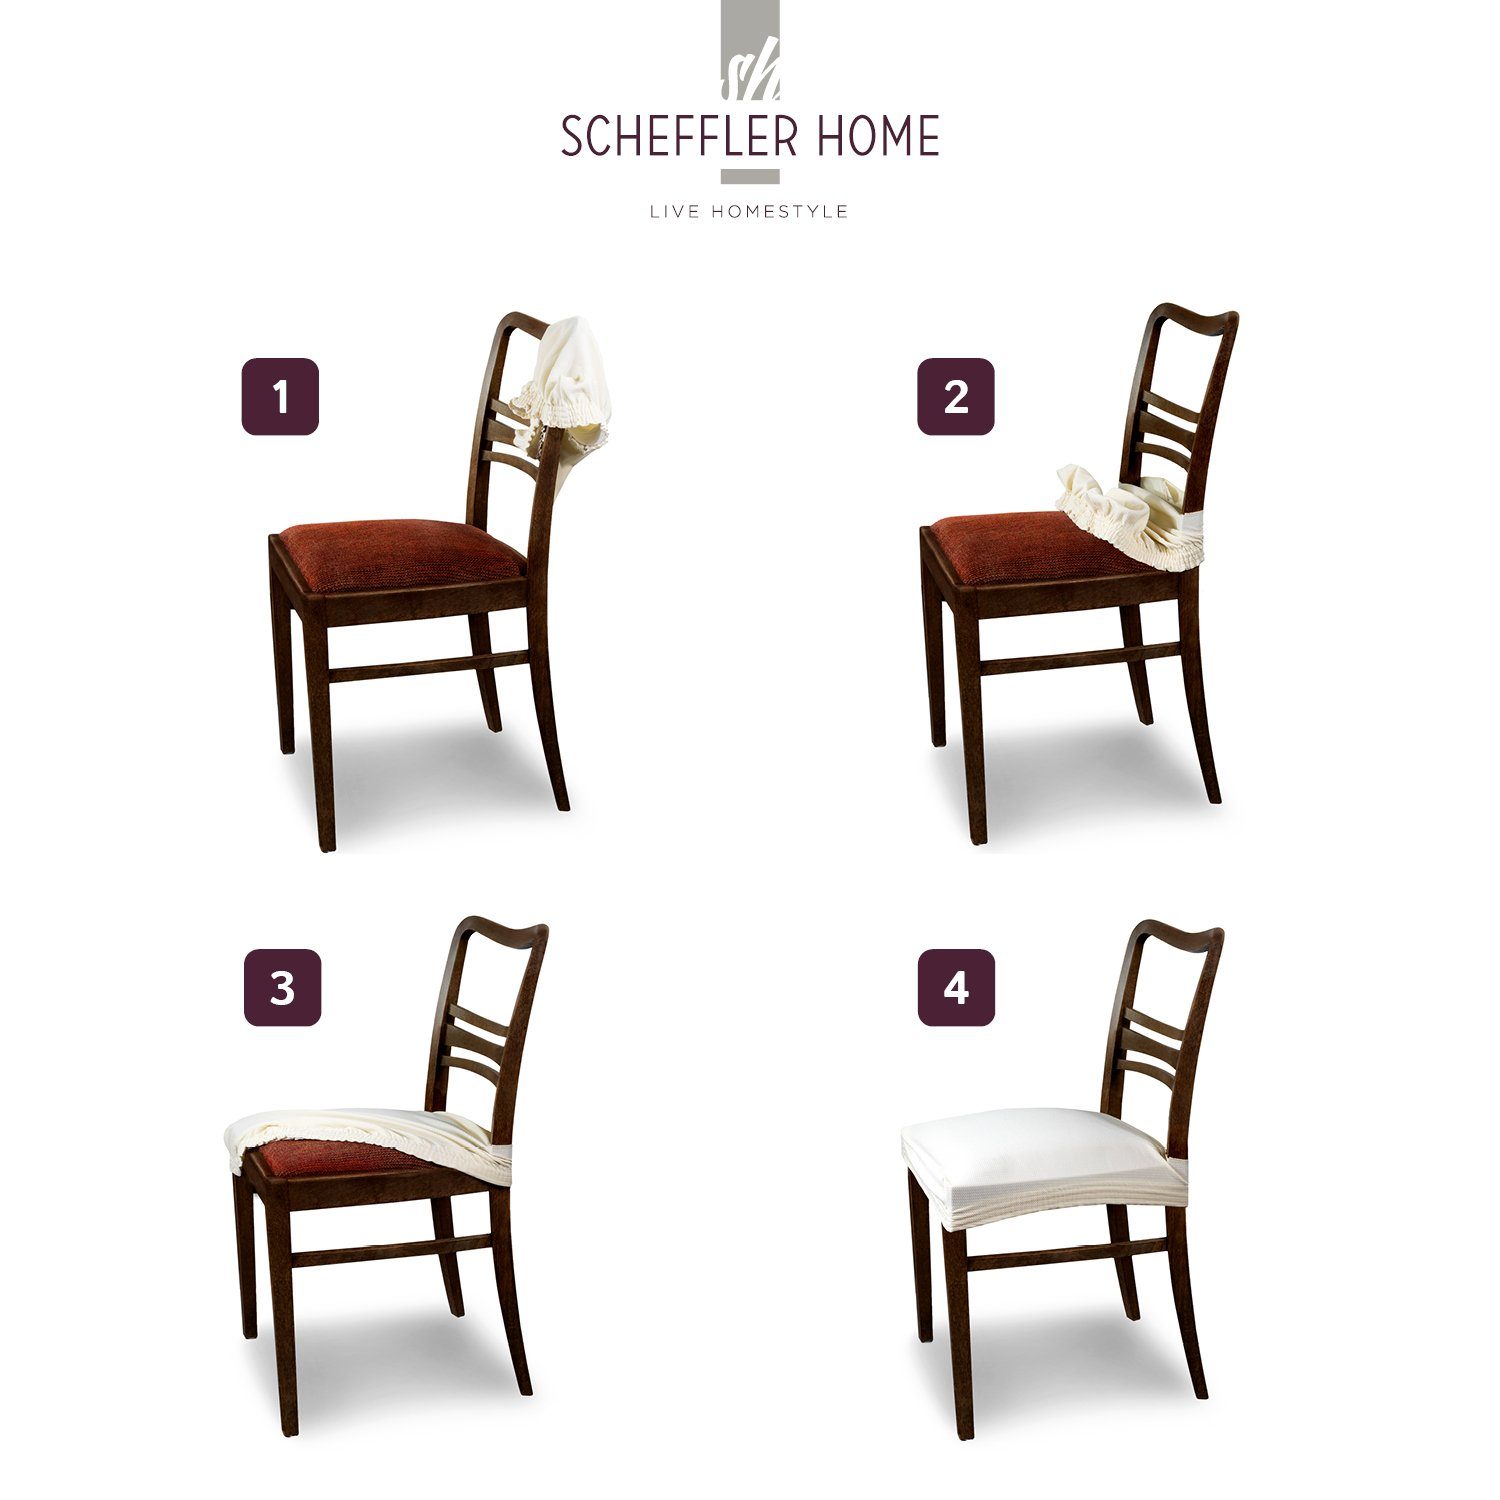 Marie Stuhlbezug Creme SCHEFFLER-HOME und Lotus Sitzbezug LIVE HOMESTYLE sh Effekt, mit Fleckenschutz elastisch